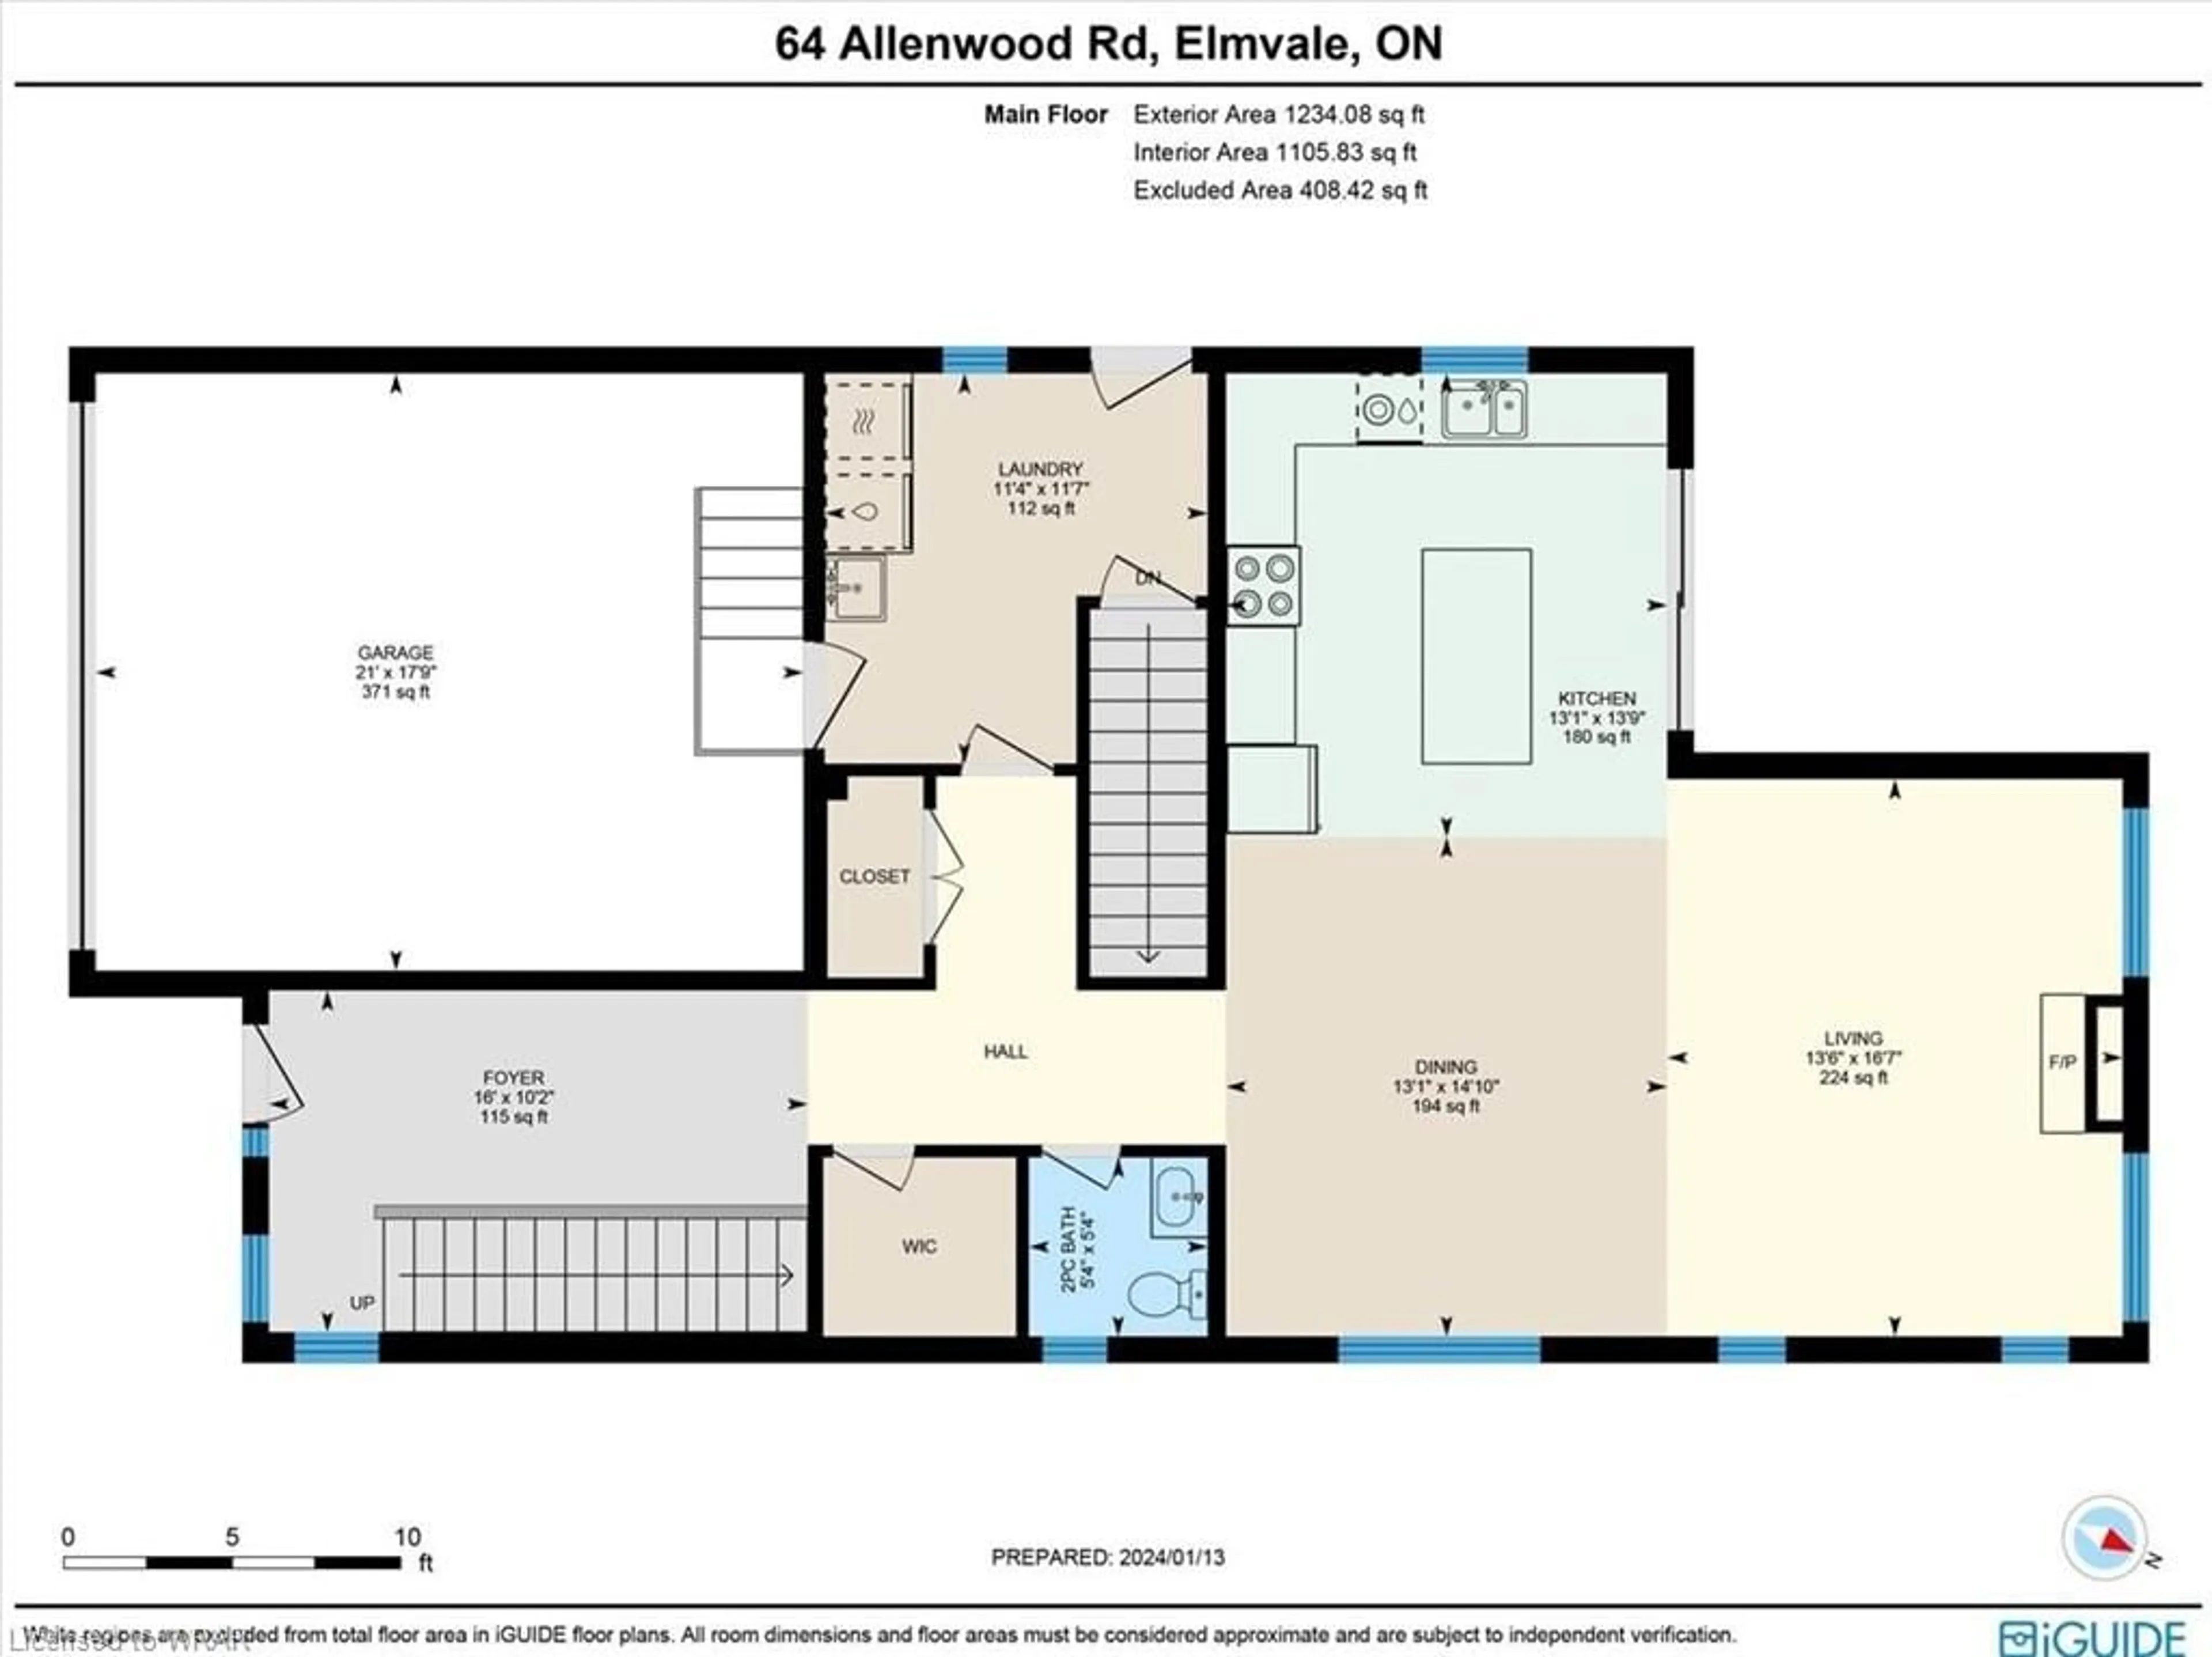 Floor plan for 64 Allenwood Rd, Elmvale Ontario L0L 1P0